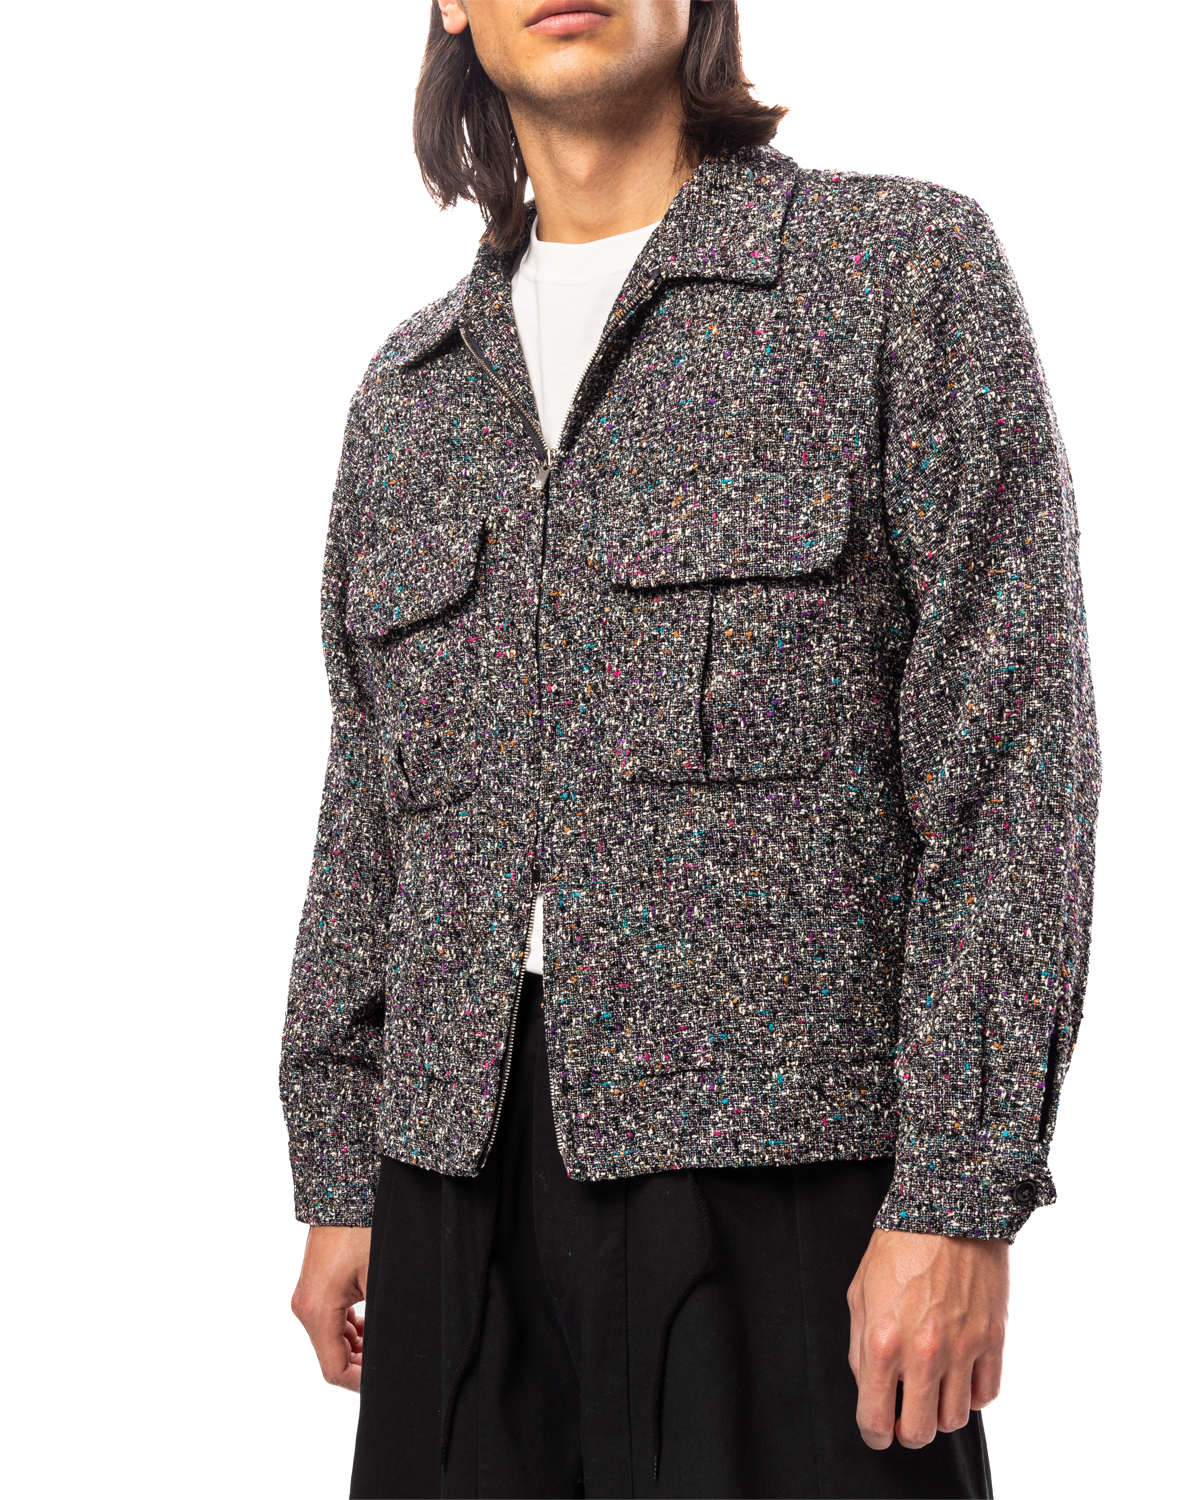 Sport Jacket - W/R/N/AC/PE Fancy Cloth Charcoal